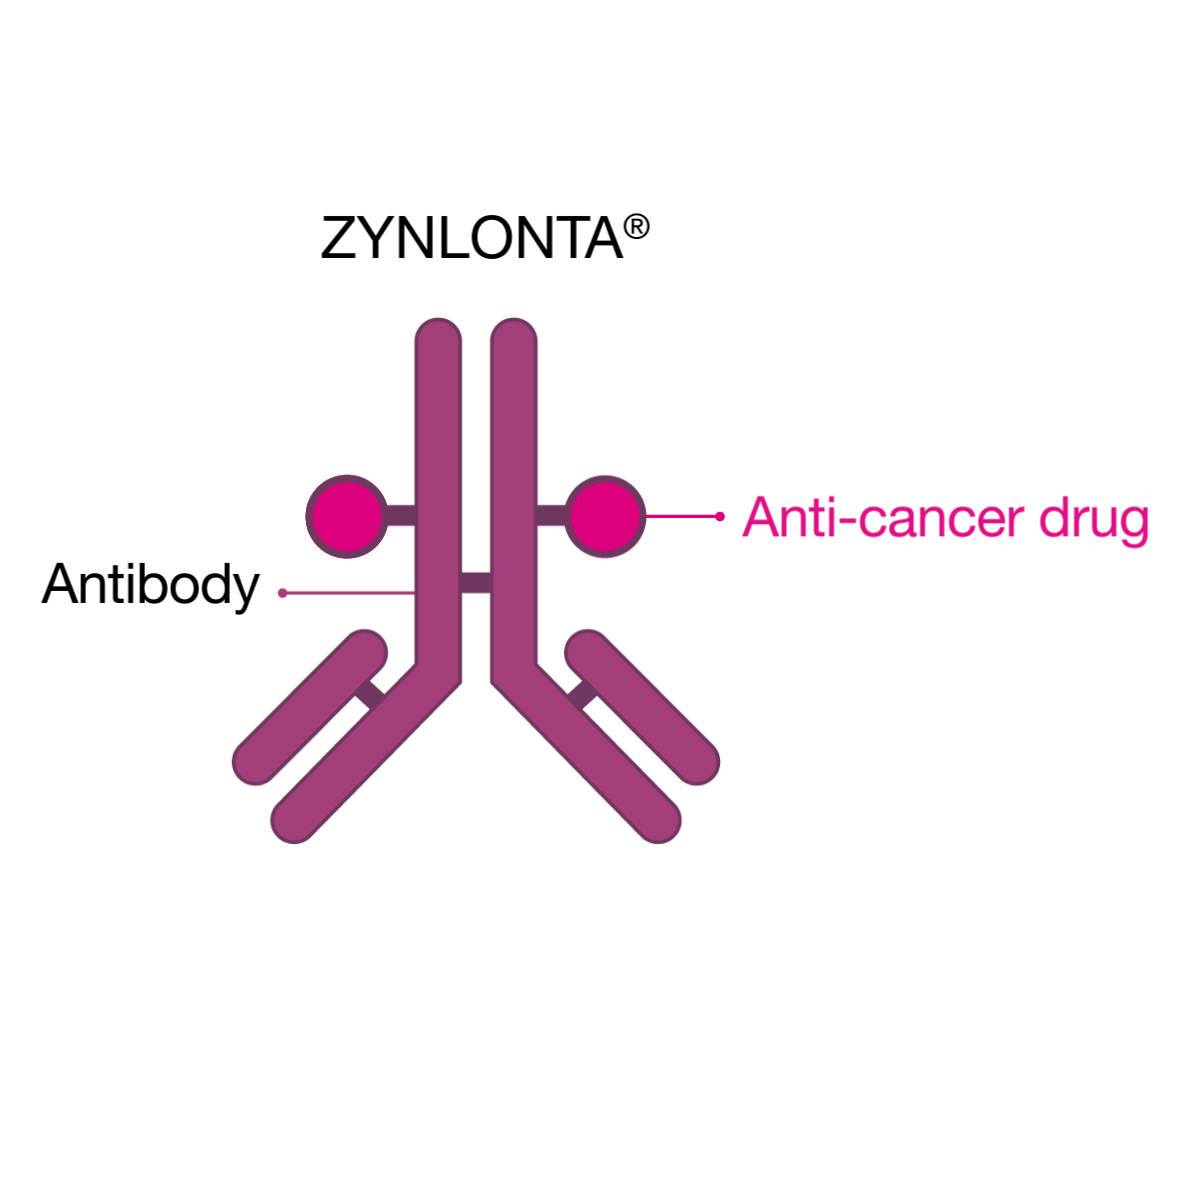 ZYNLONTA® antibody attached to anti-cancer drug